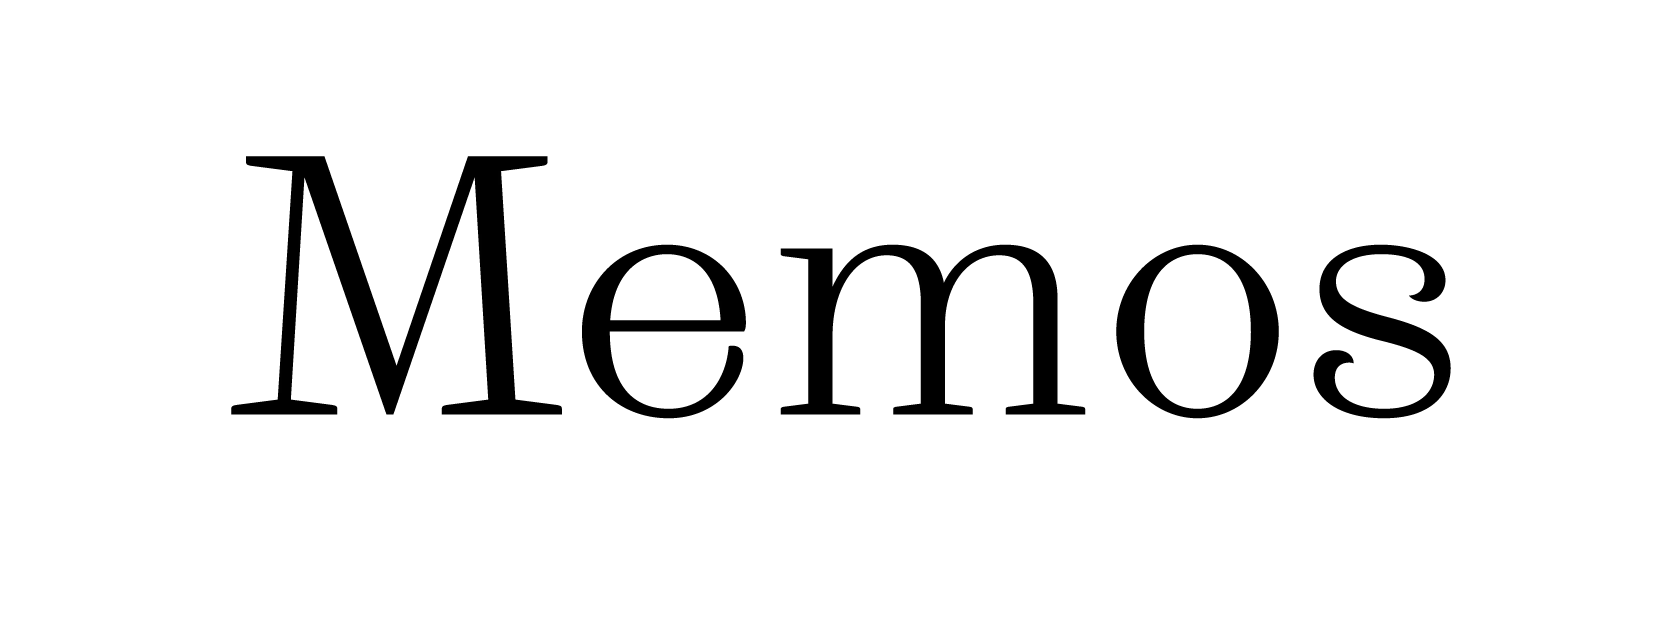 Пример использования альтернативной буквы «М» и «s»